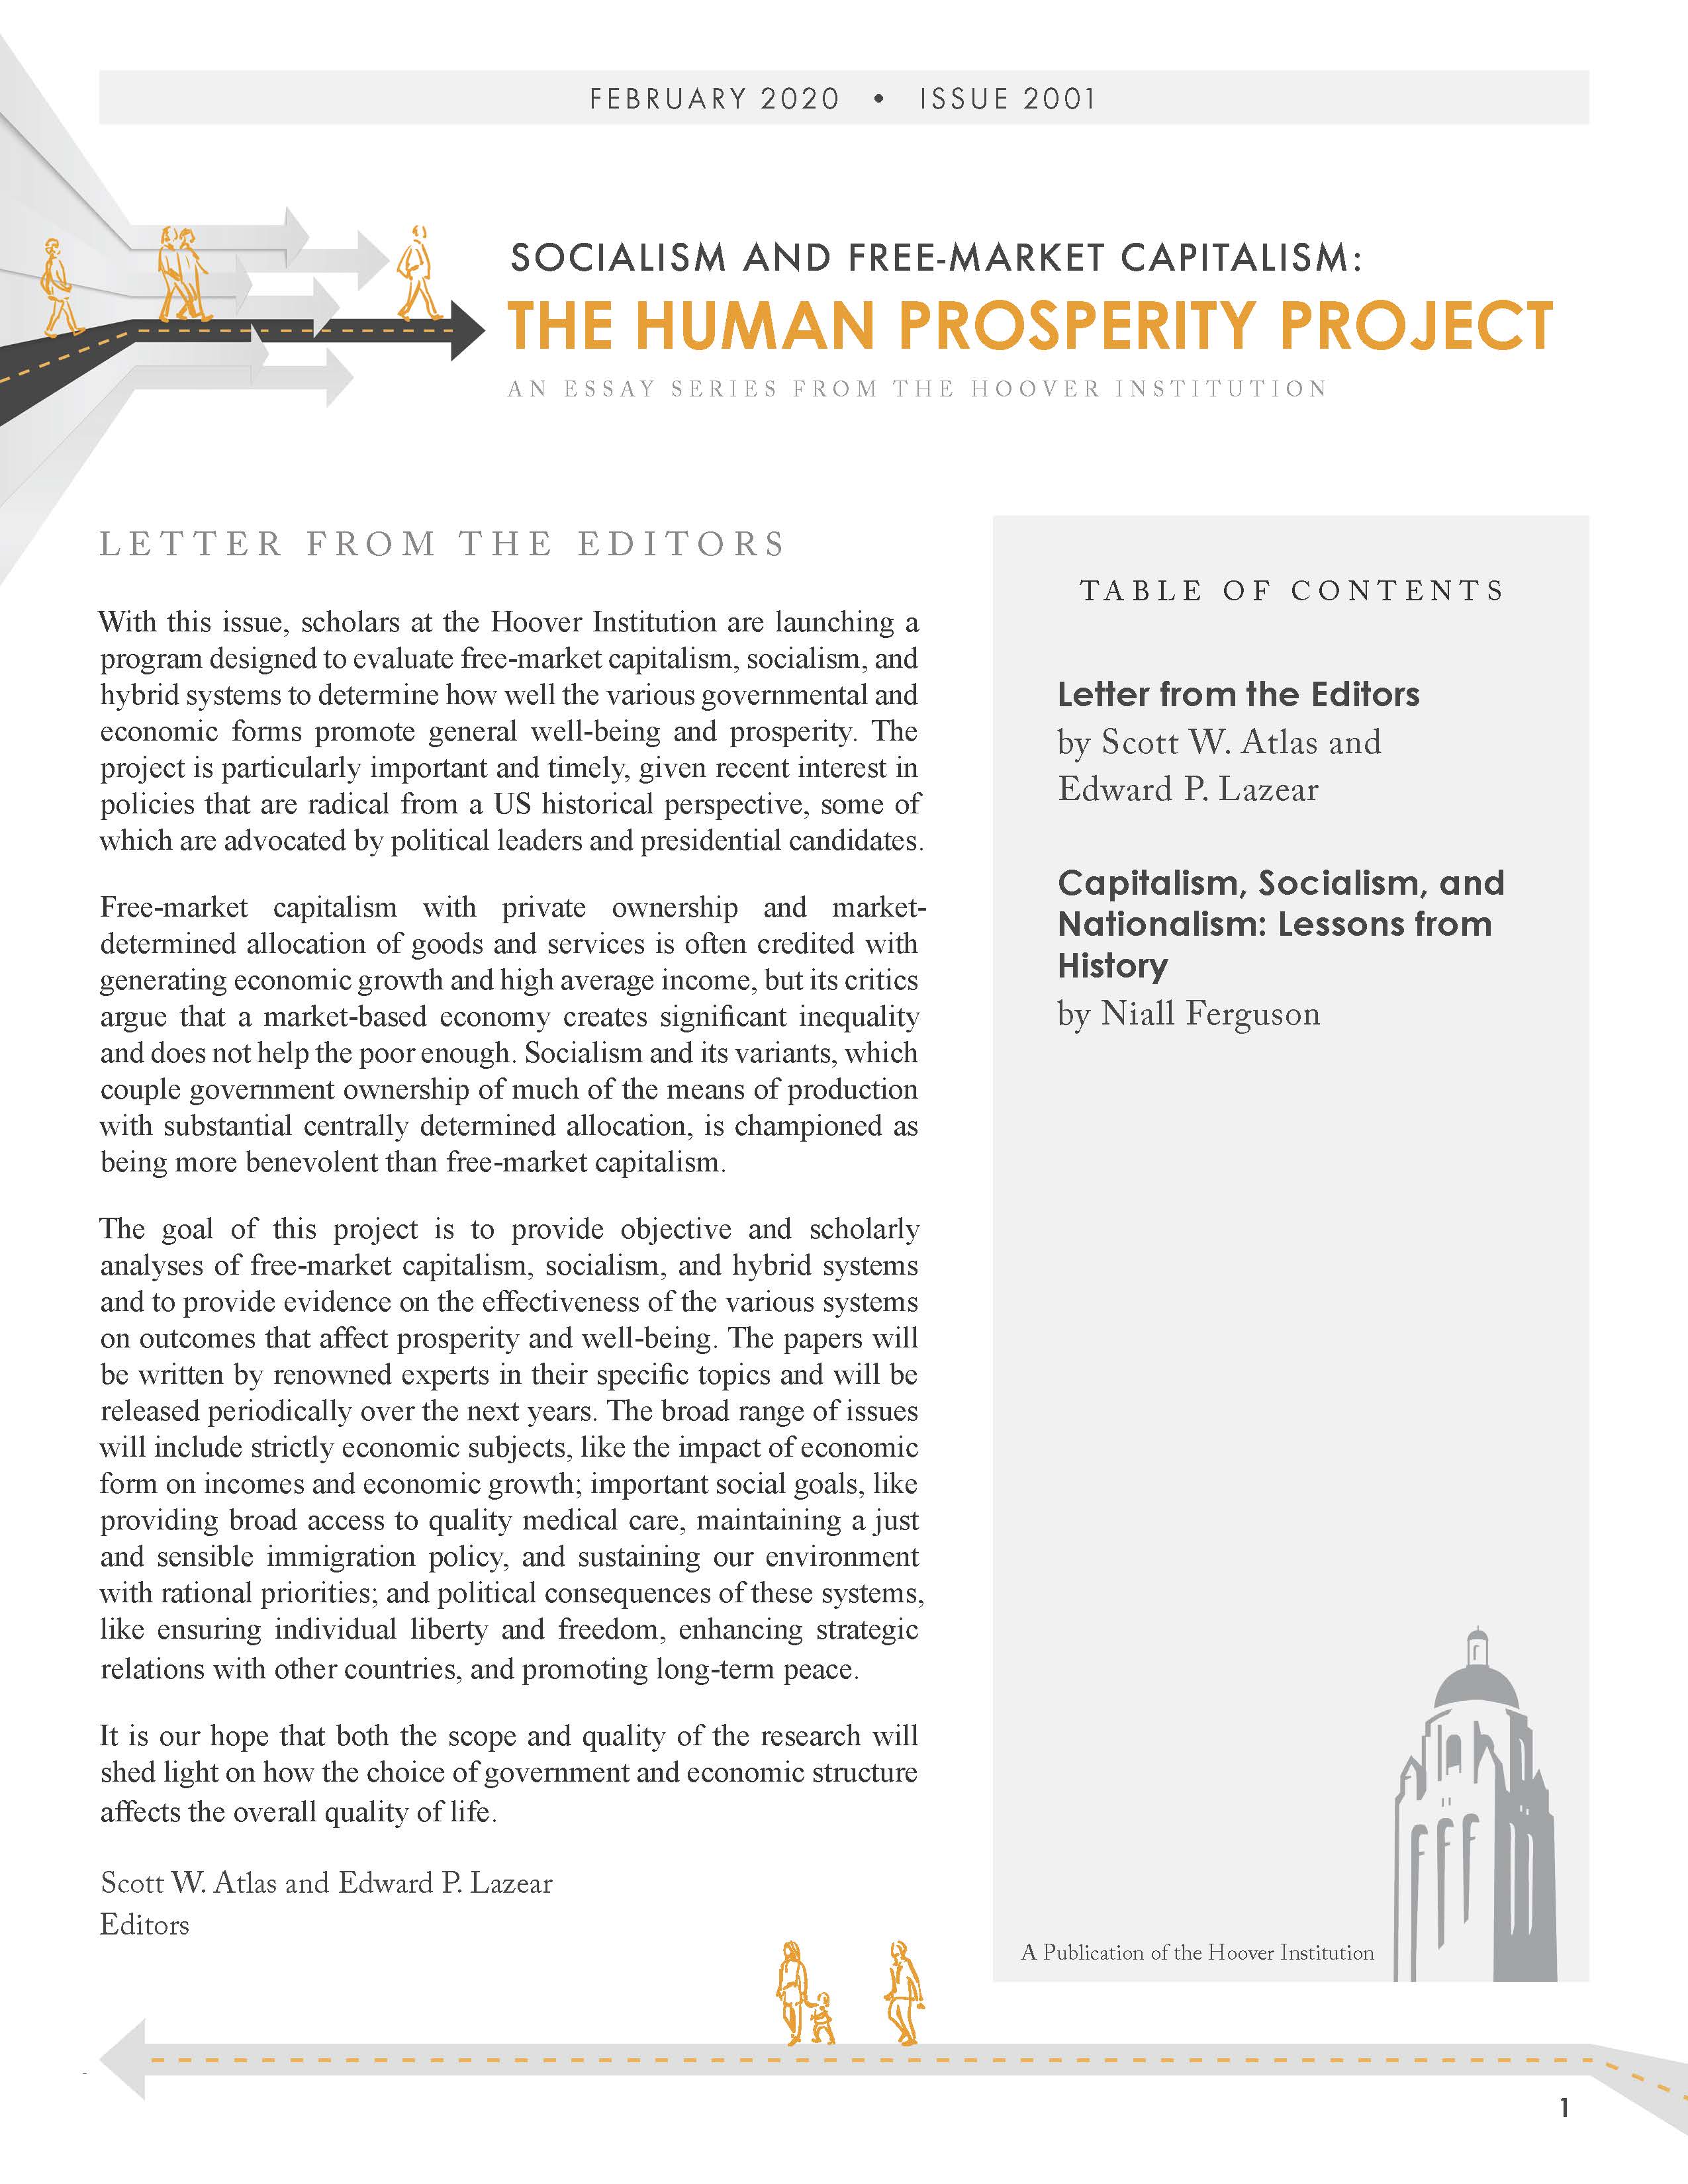 prosperityproject_niallferguson_page_01.jpg